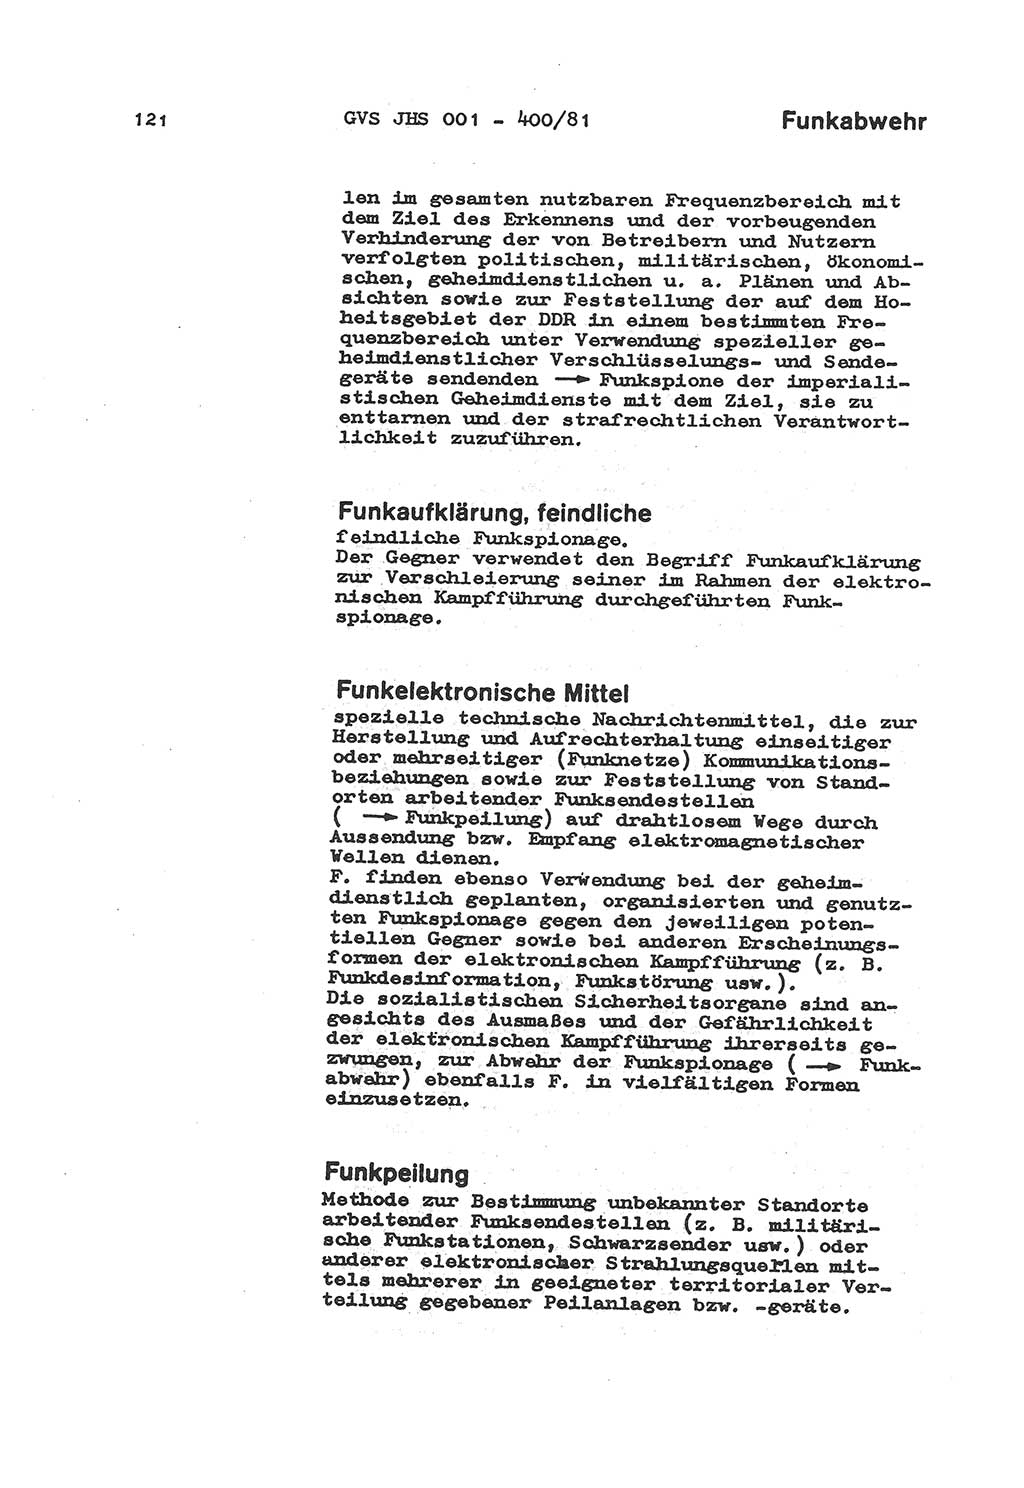 Wörterbuch der politisch-operativen Arbeit, Ministerium für Staatssicherheit (MfS) [Deutsche Demokratische Republik (DDR)], Juristische Hochschule (JHS), Geheime Verschlußsache (GVS) o001-400/81, Potsdam 1985, Blatt 121 (Wb. pol.-op. Arb. MfS DDR JHS GVS o001-400/81 1985, Bl. 121)